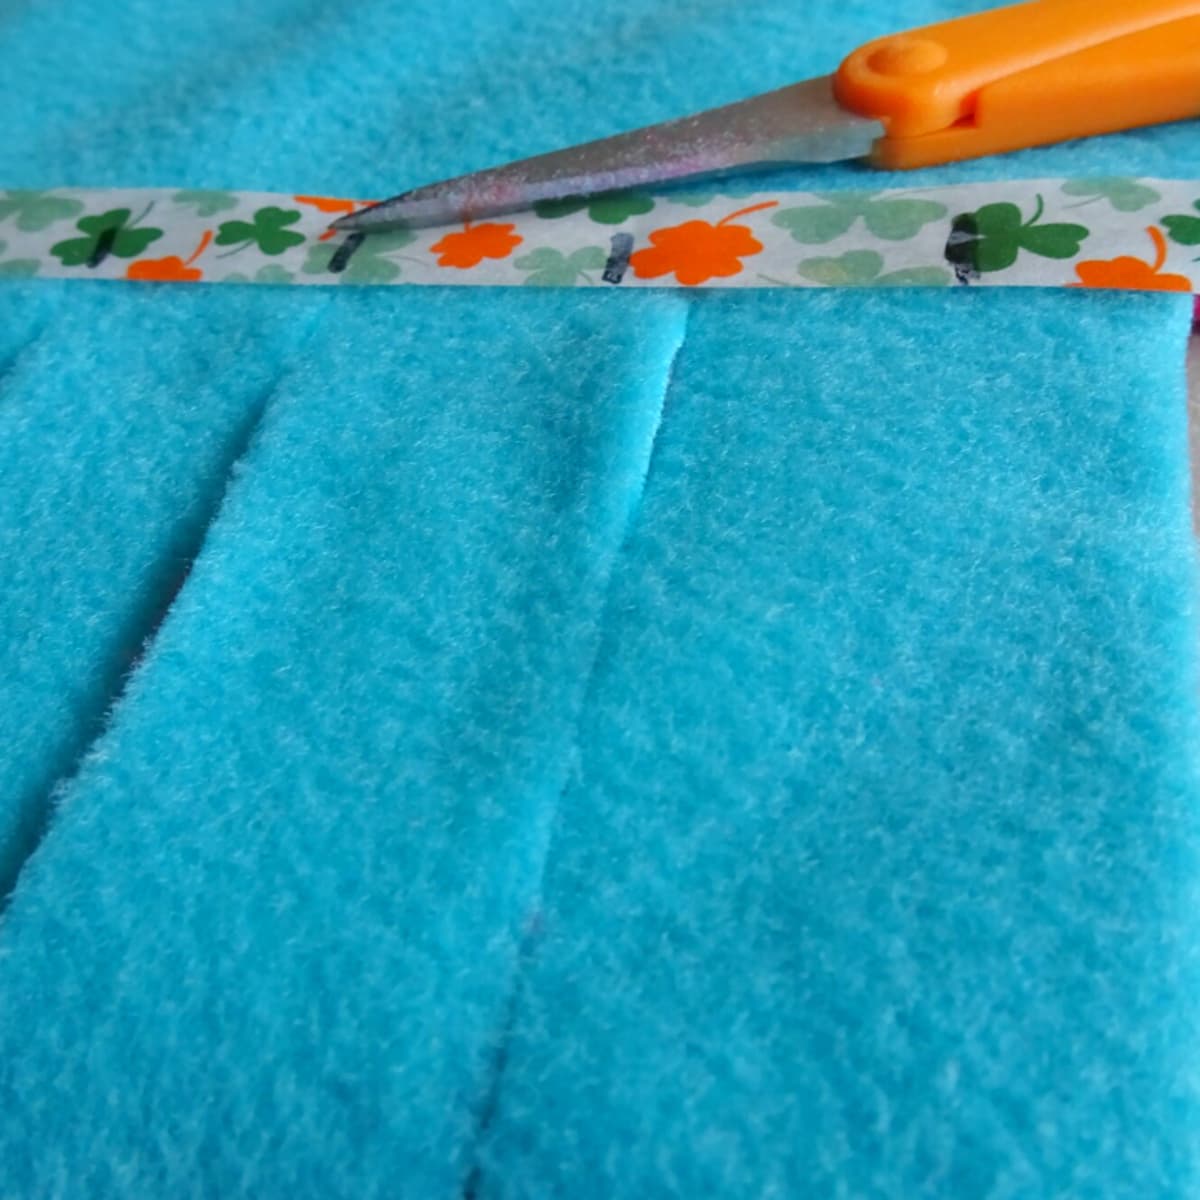 How to Make an Easy No-Sew Tie Fleece Blanket - FeltMagnet